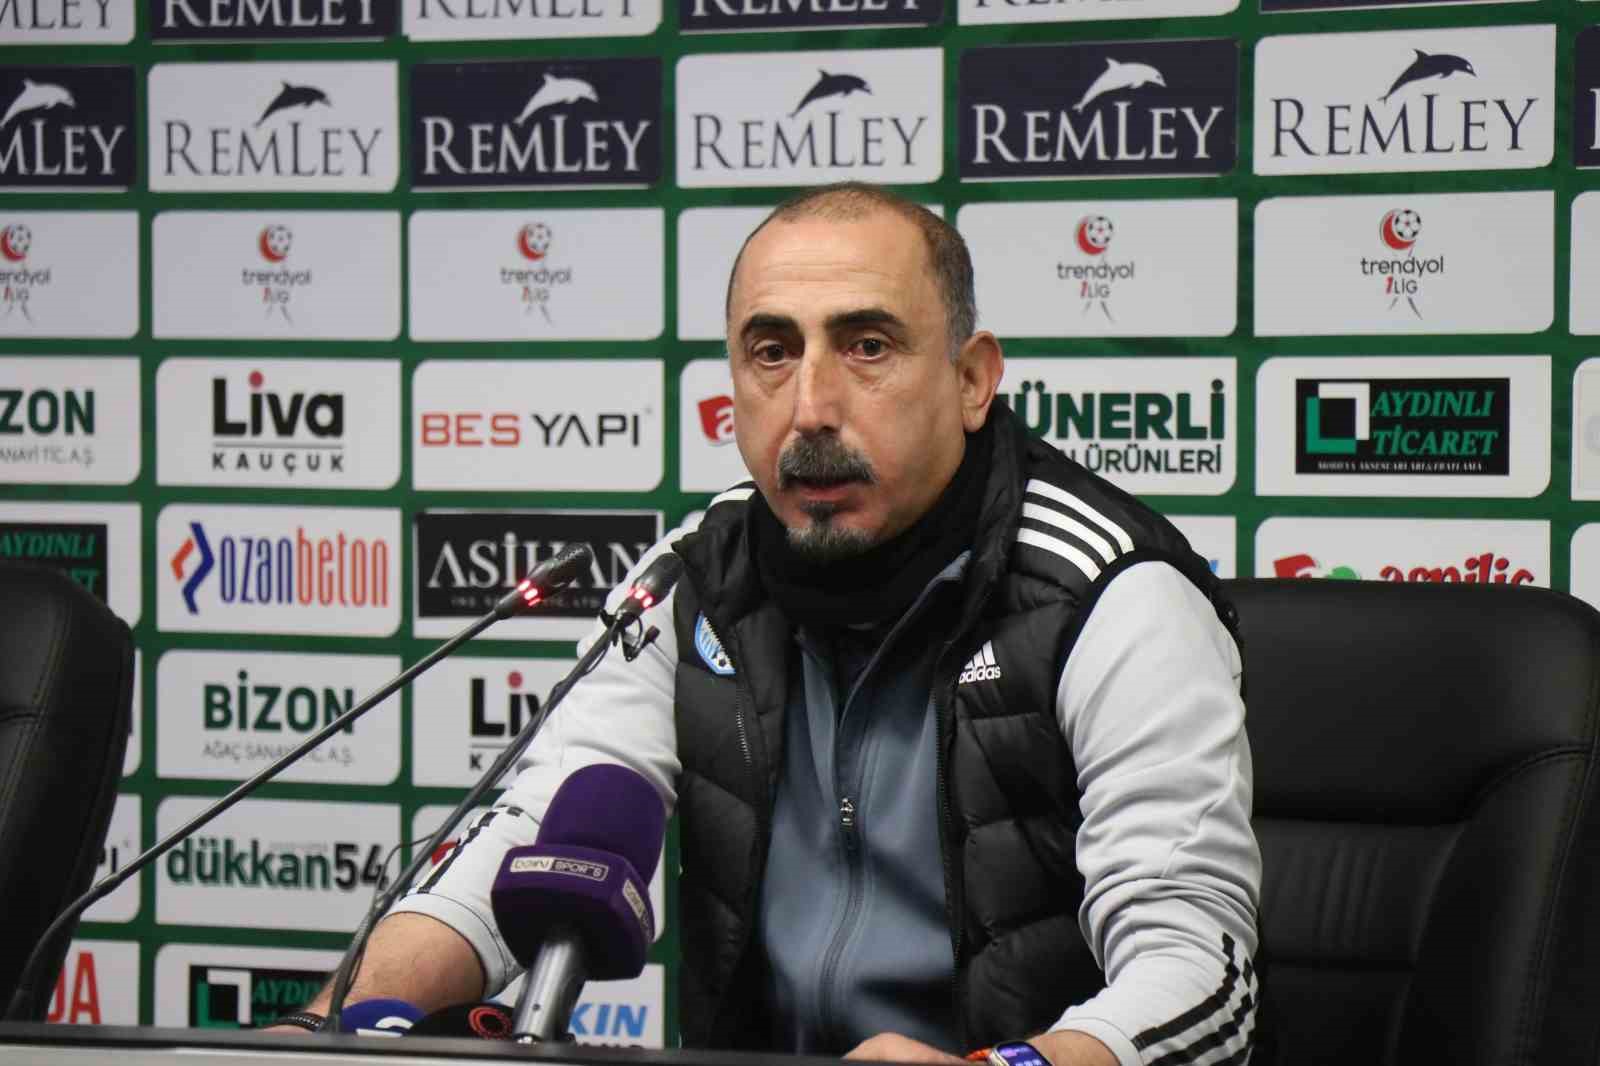 Sakaryaspor-Erzurumspor FK maçının ardından